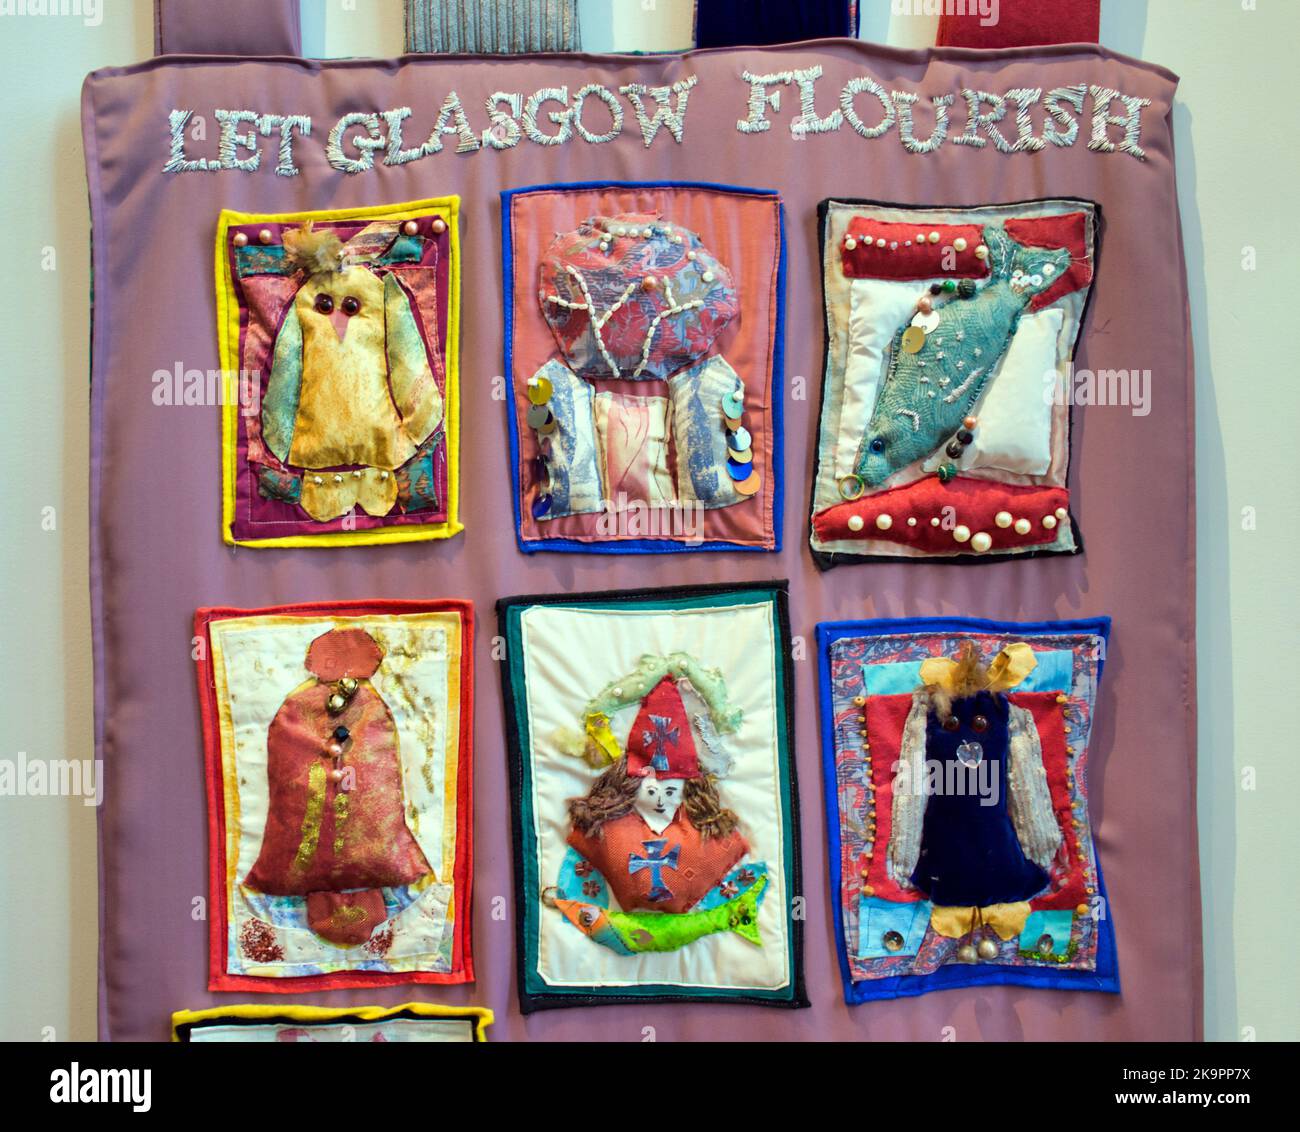 Museo de San Mungo de Vida Religiosa y Arte Permita que Glasgow florezca bandera acolchada multicultural Foto de stock